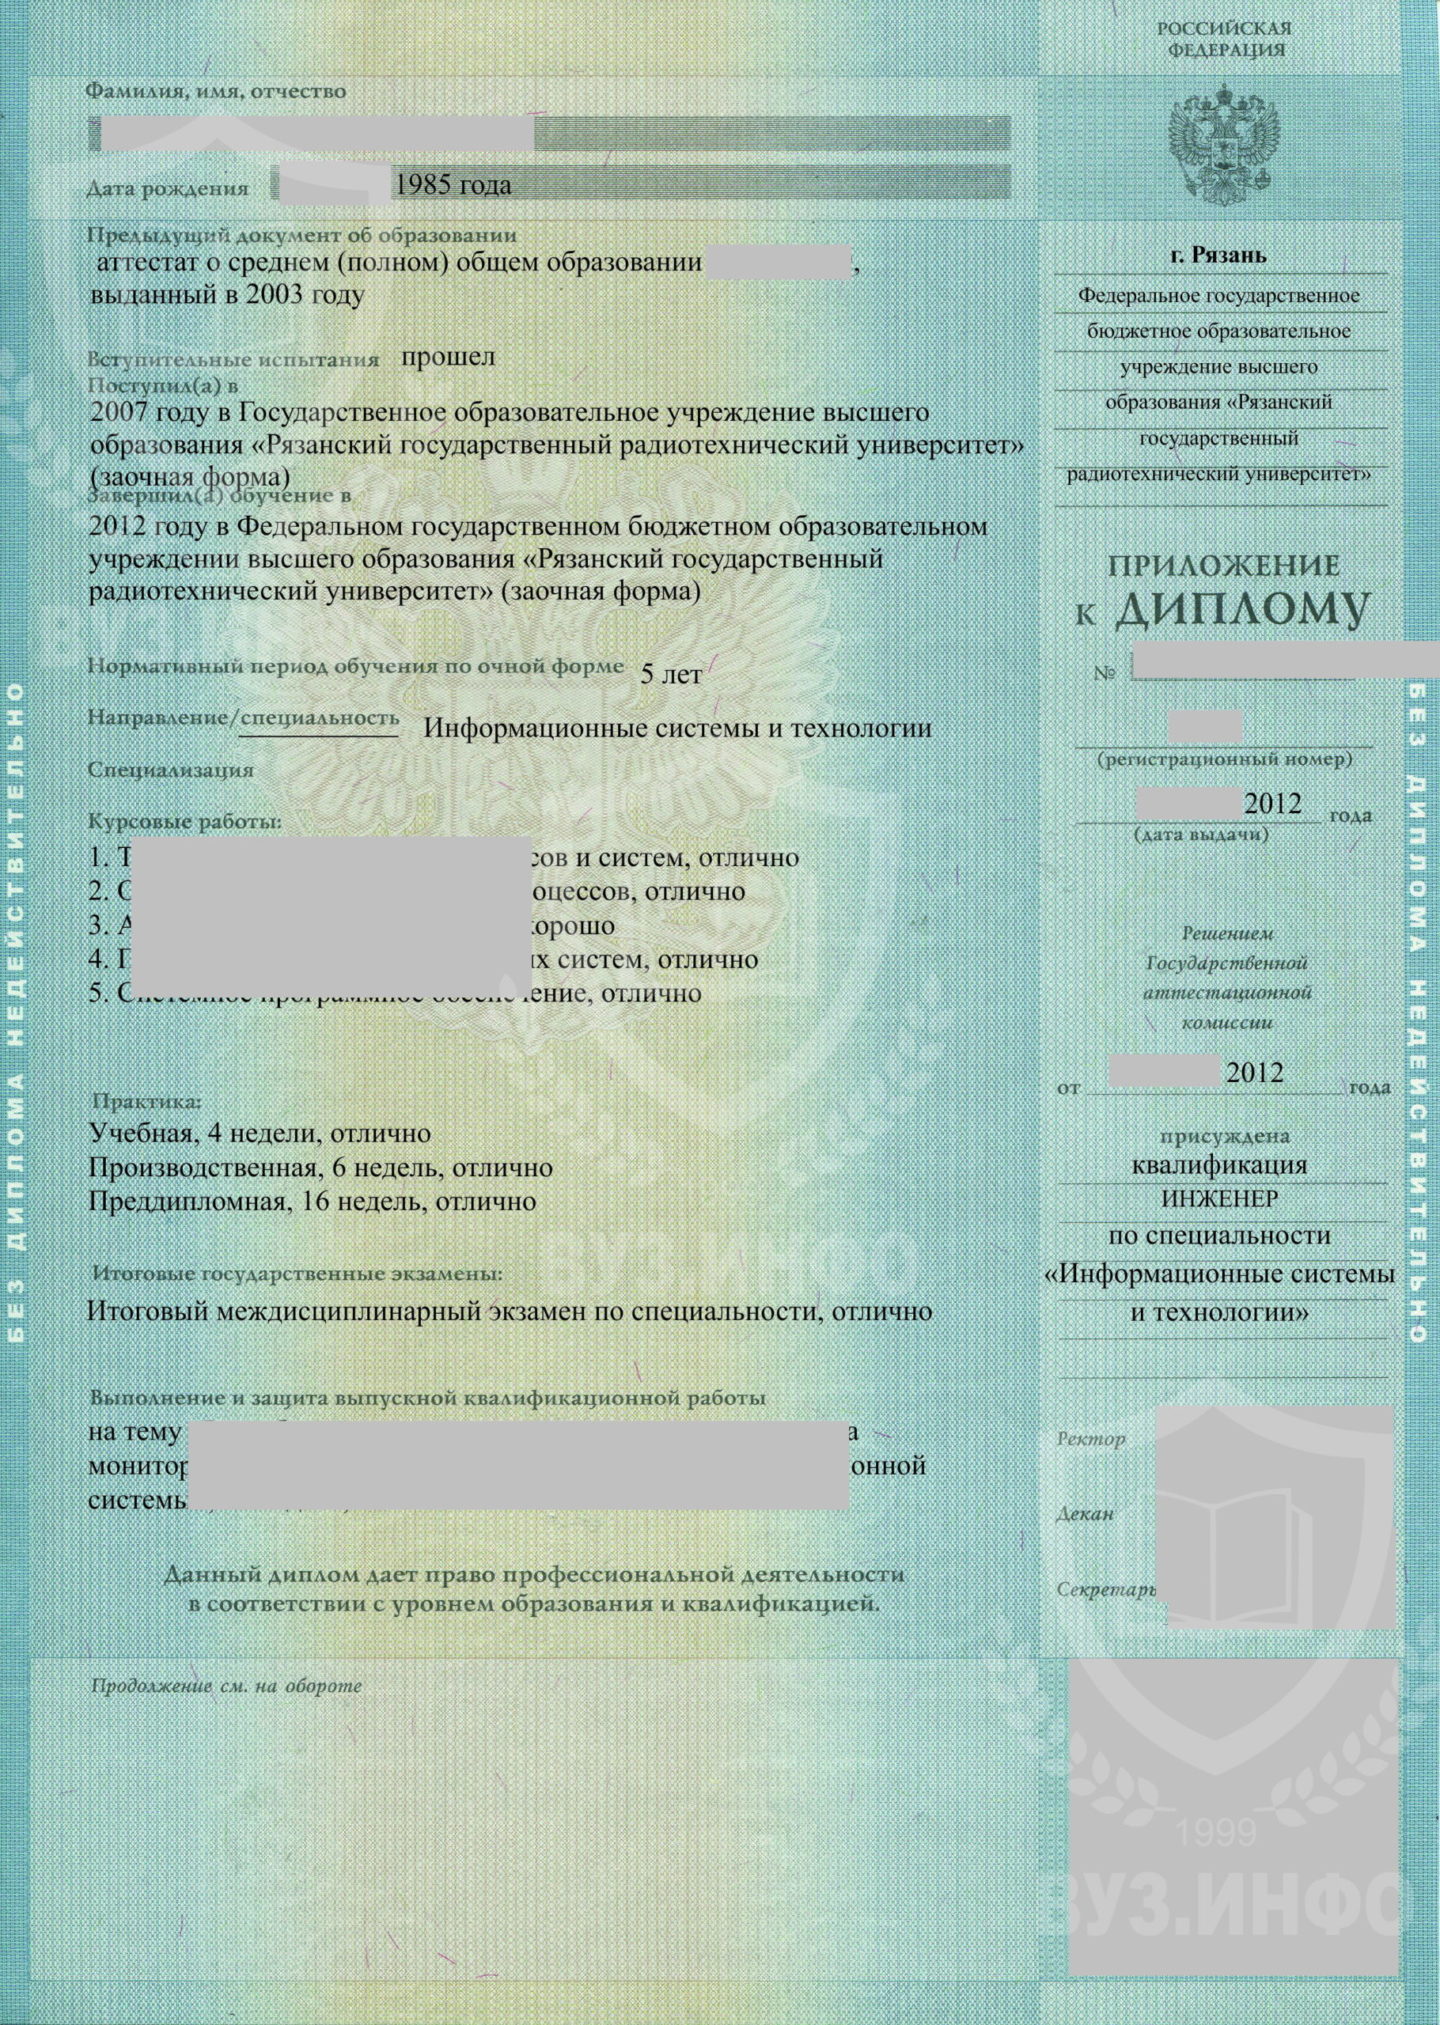 Приложение к диплом о высшем образовании 2012 года РГРТУ